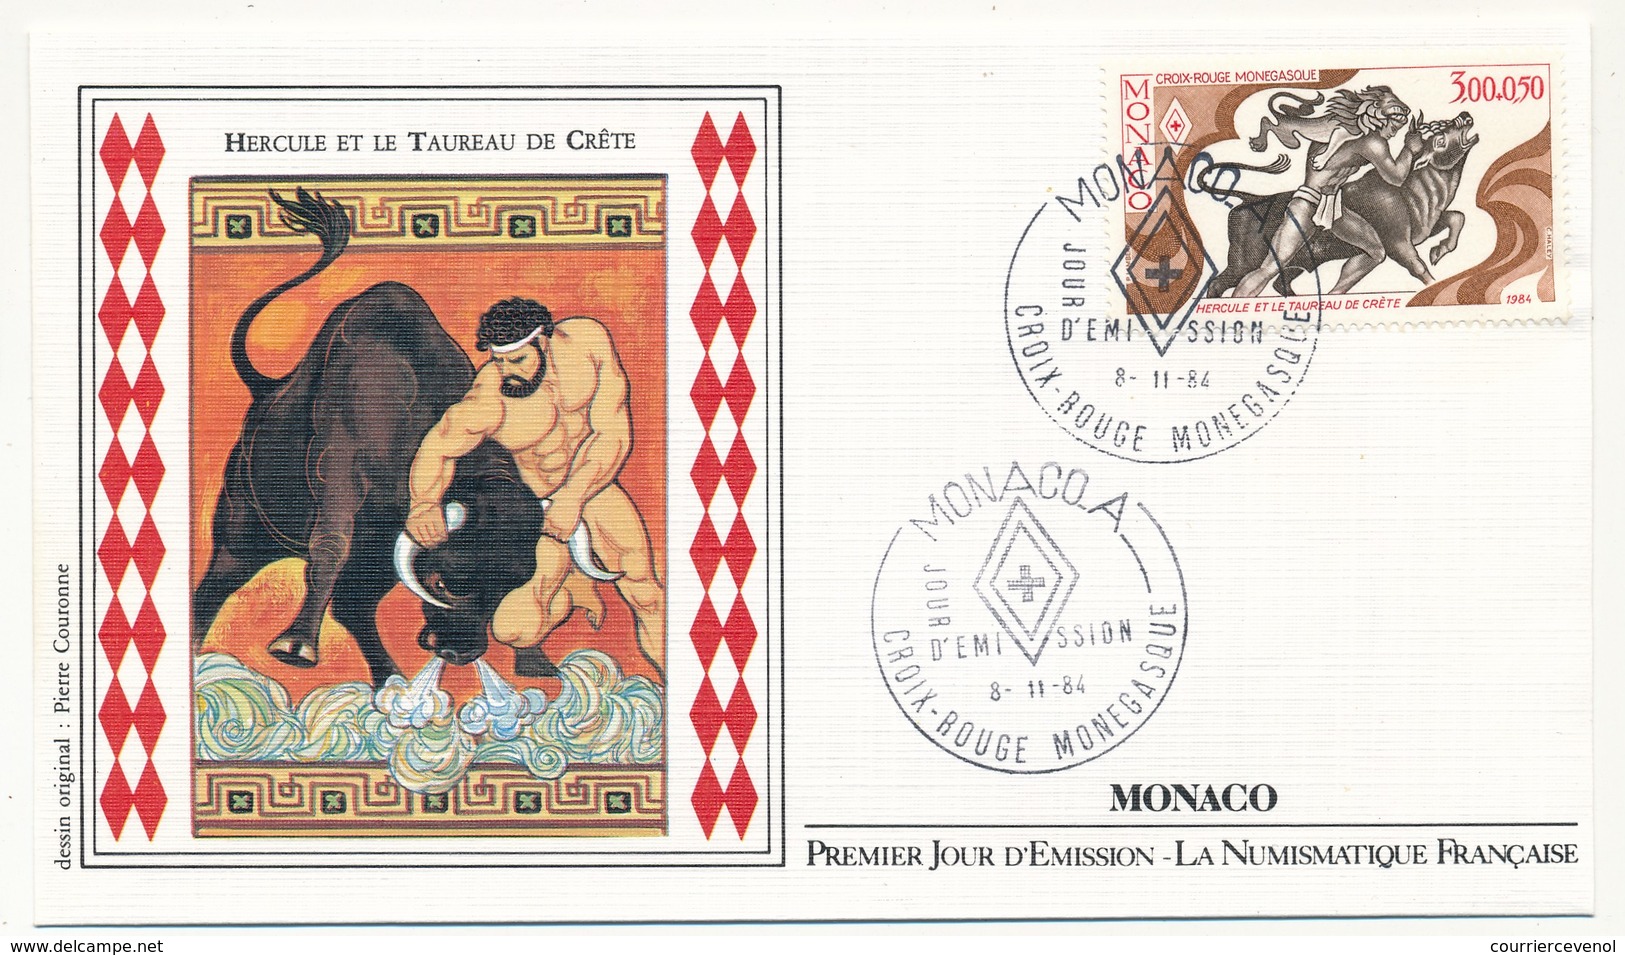 MONACO => 2 Enveloppes FDC - Croix Rouge Monégasque / Hercule Et Le Taureau De Crête - Premier Jour 1984 - FDC